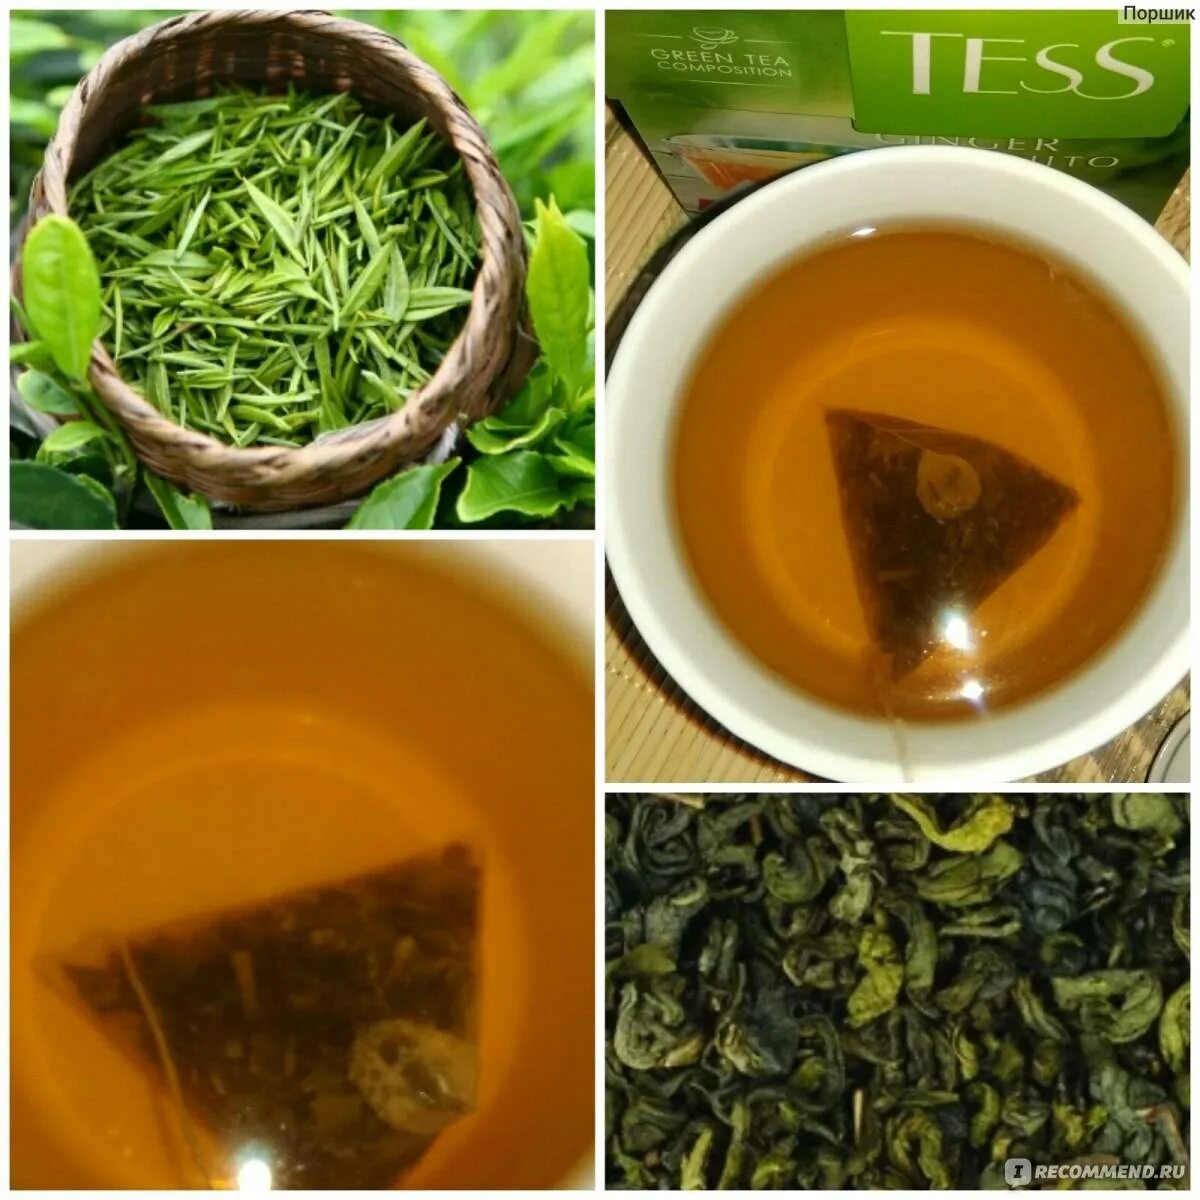 Заварка цена. Зеленый чай. Свежезаваренный зеленый чай. Зеленый чай заварка. Заварка листового чая.